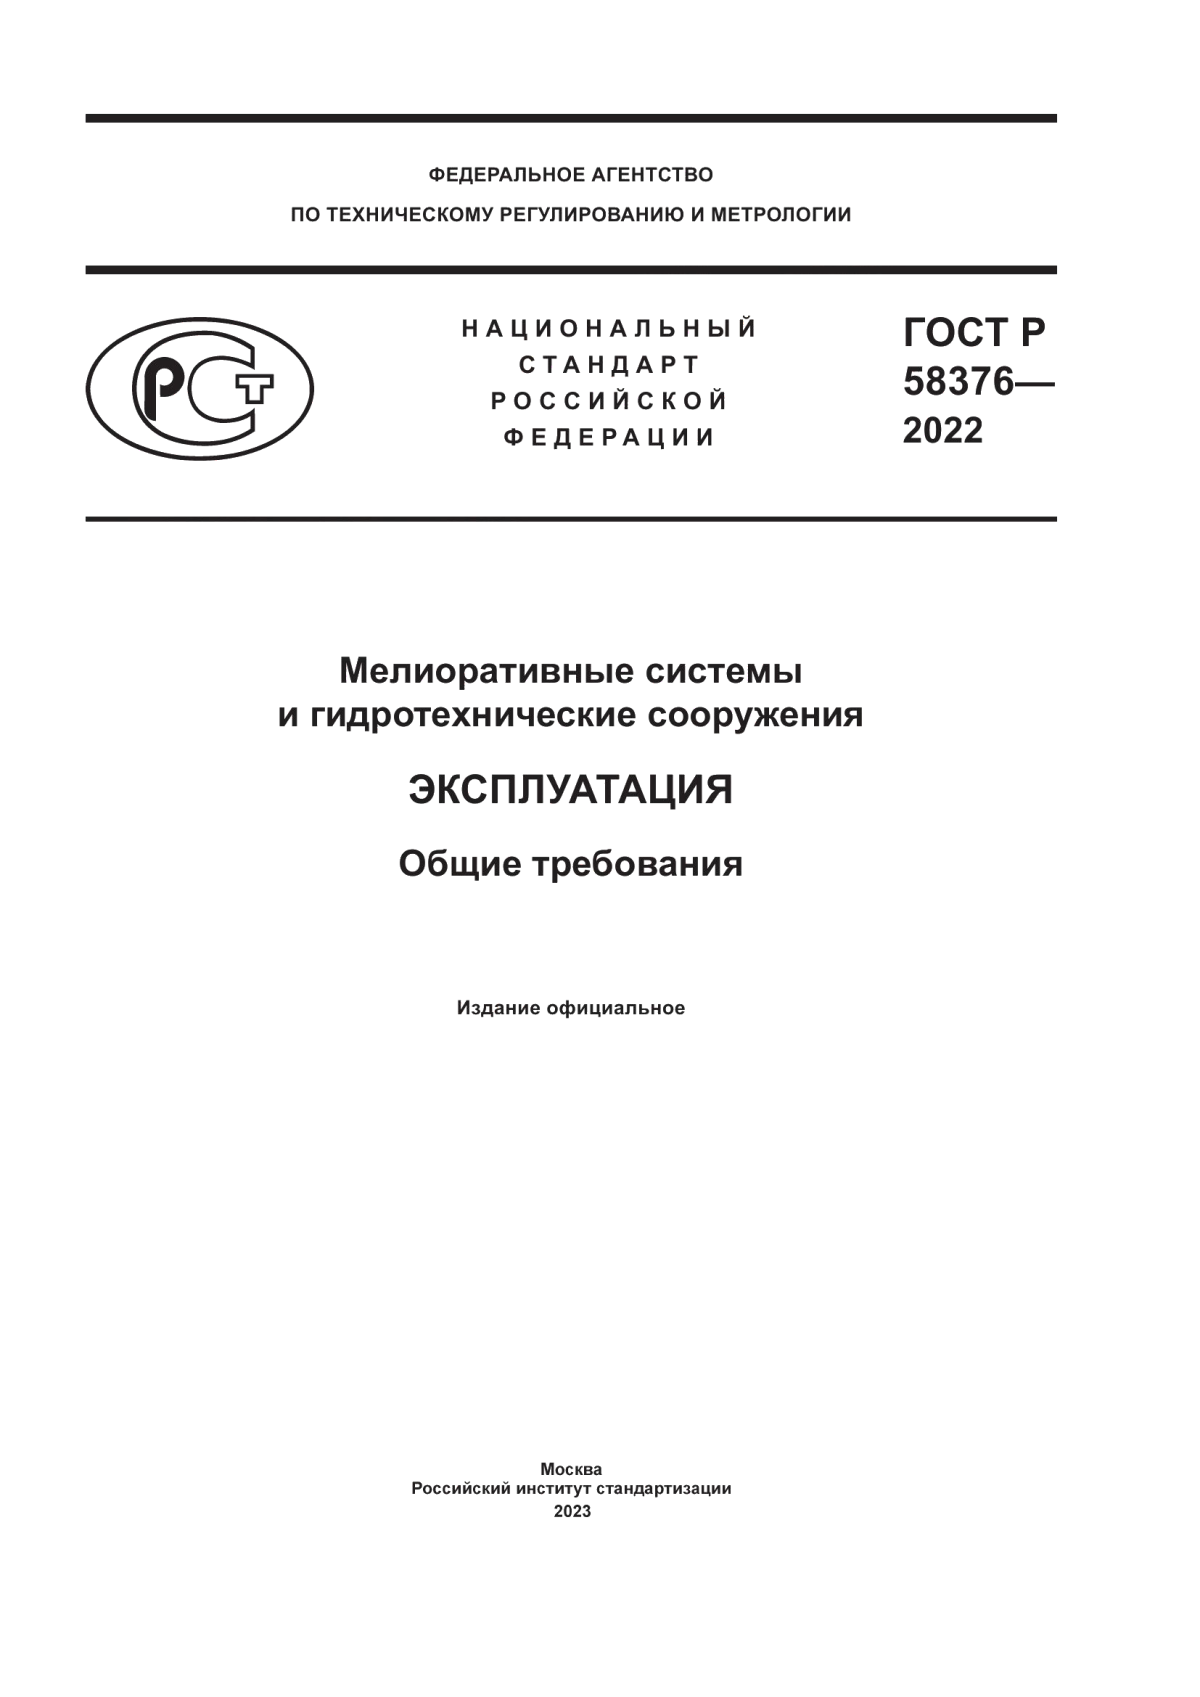 ГОСТ Р 58376-2022 Мелиоративные системы и гидротехнические сооружения. Эксплуатация. Общие требования